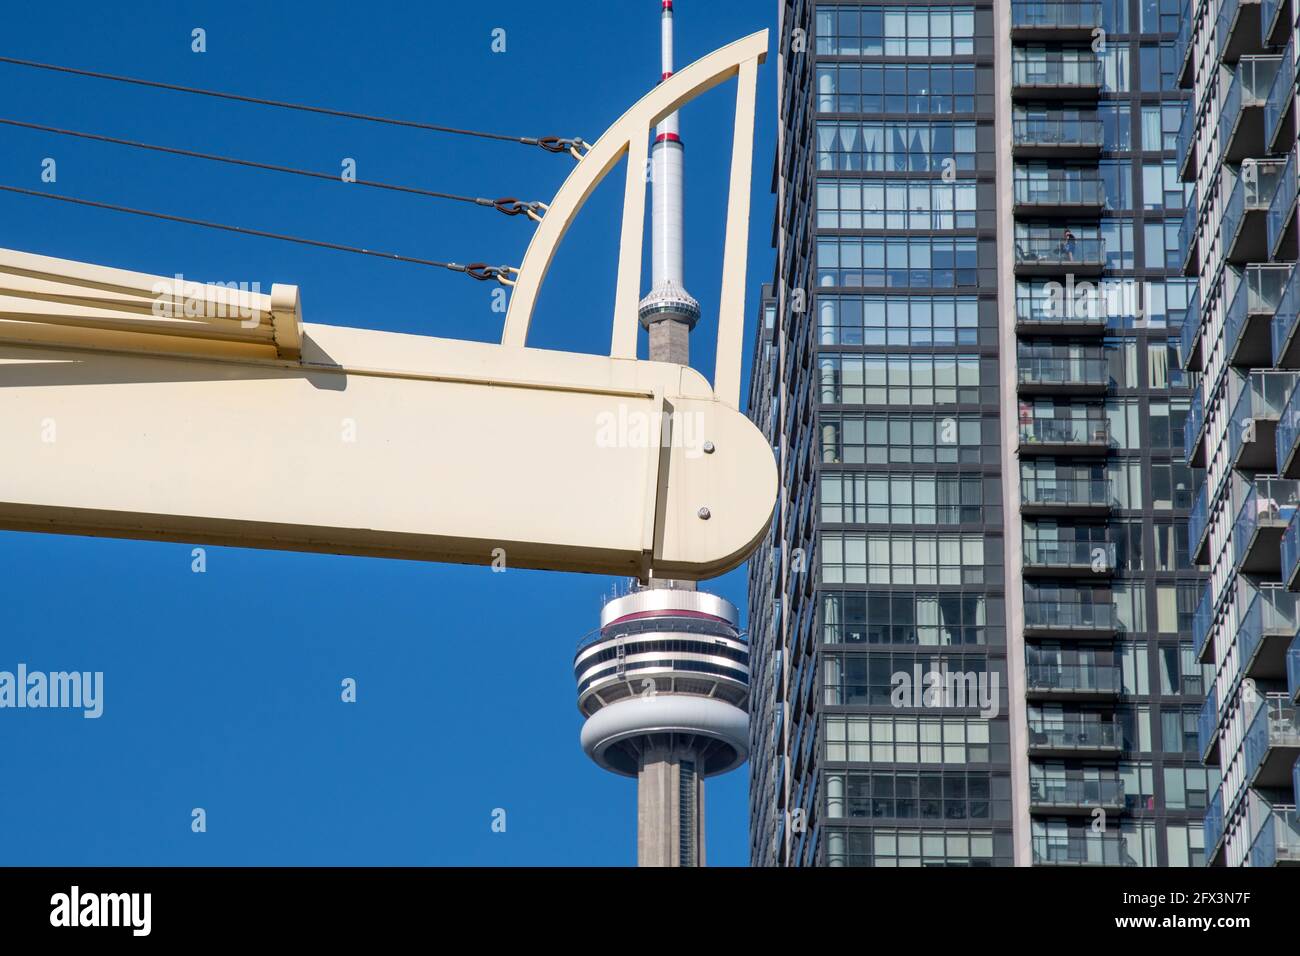 La CN Tower in una bella giornata cielo blu a Toronto, Canada. Il simbolo canadese è incorniciato dal ponte pedonale CityPlace e dai grattacieli. Foto Stock